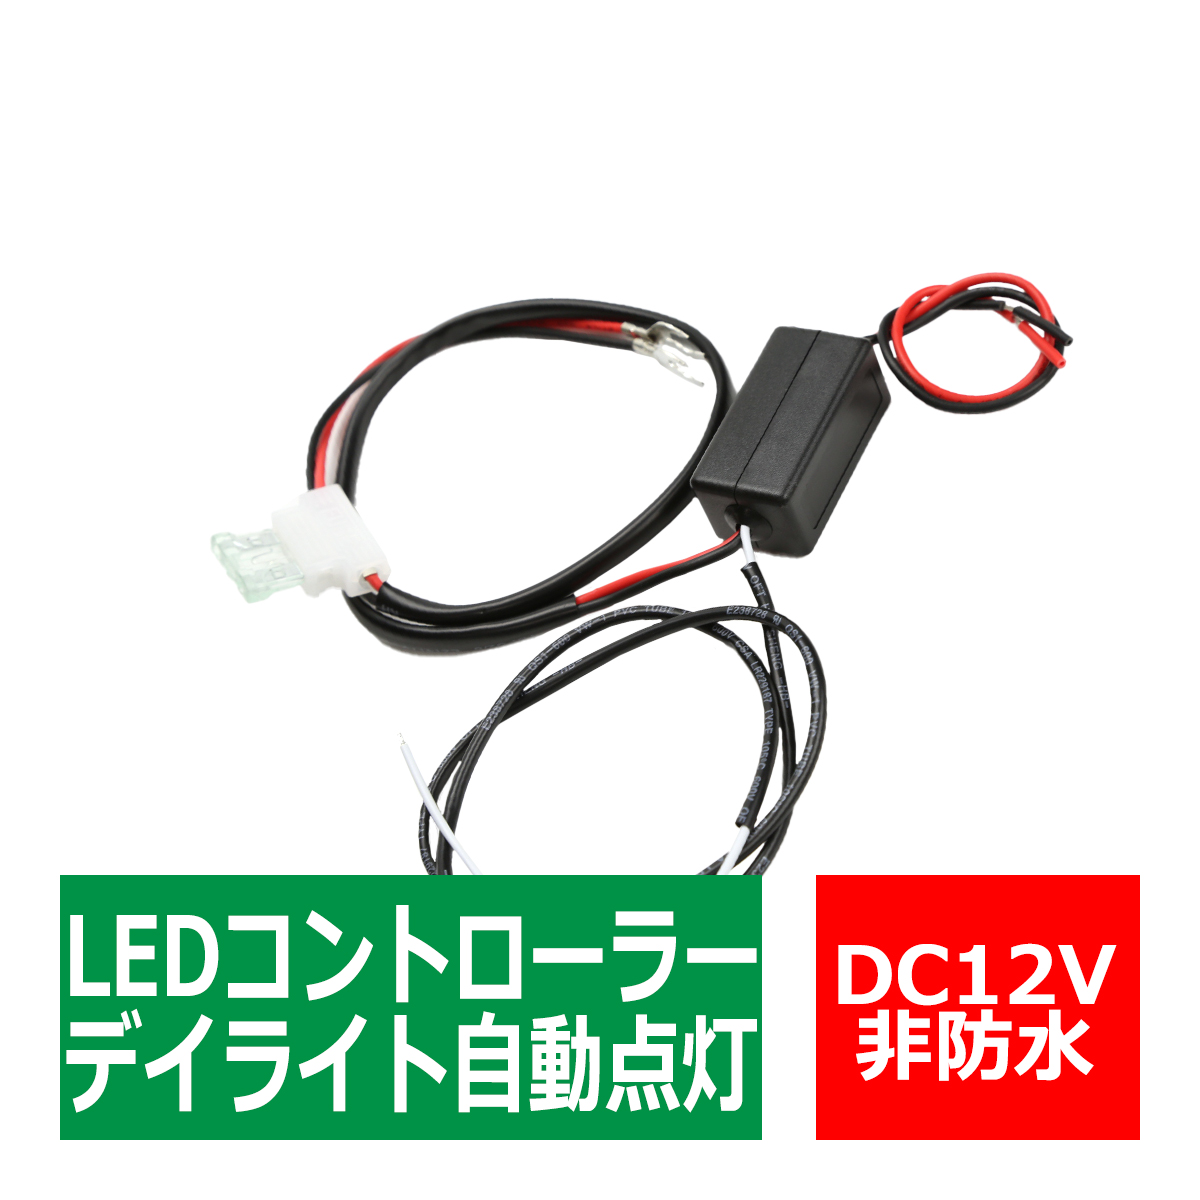 デイライト 減光機能付 デイライト自動点灯ユニット バッテリー直結OK PZ261